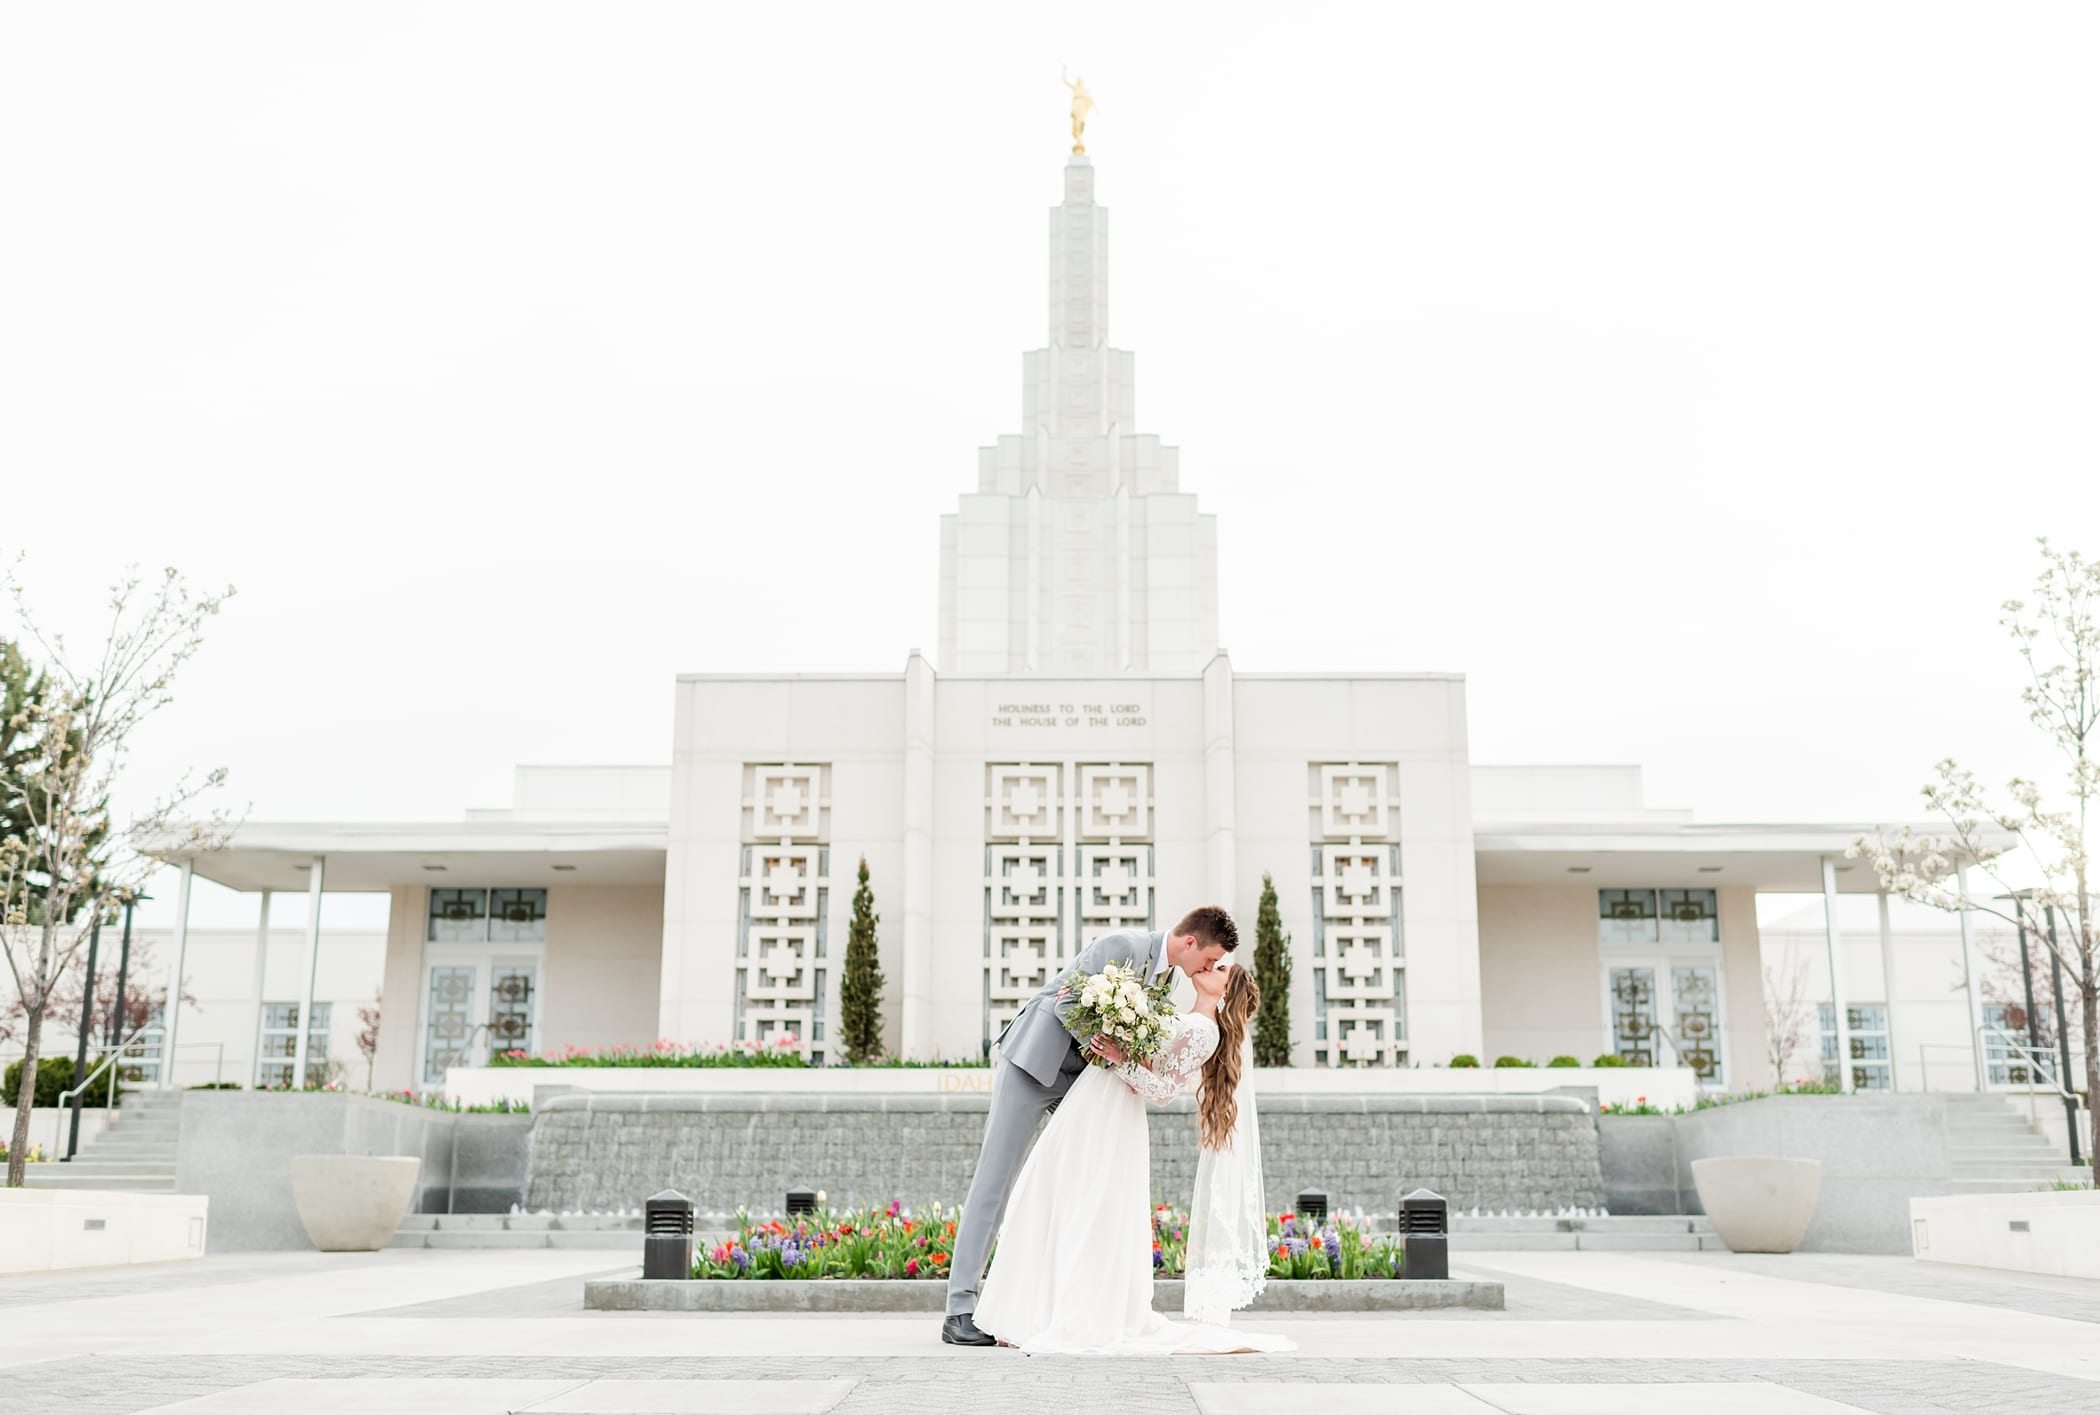 Idaho Falls Temple in the spring wedding photos